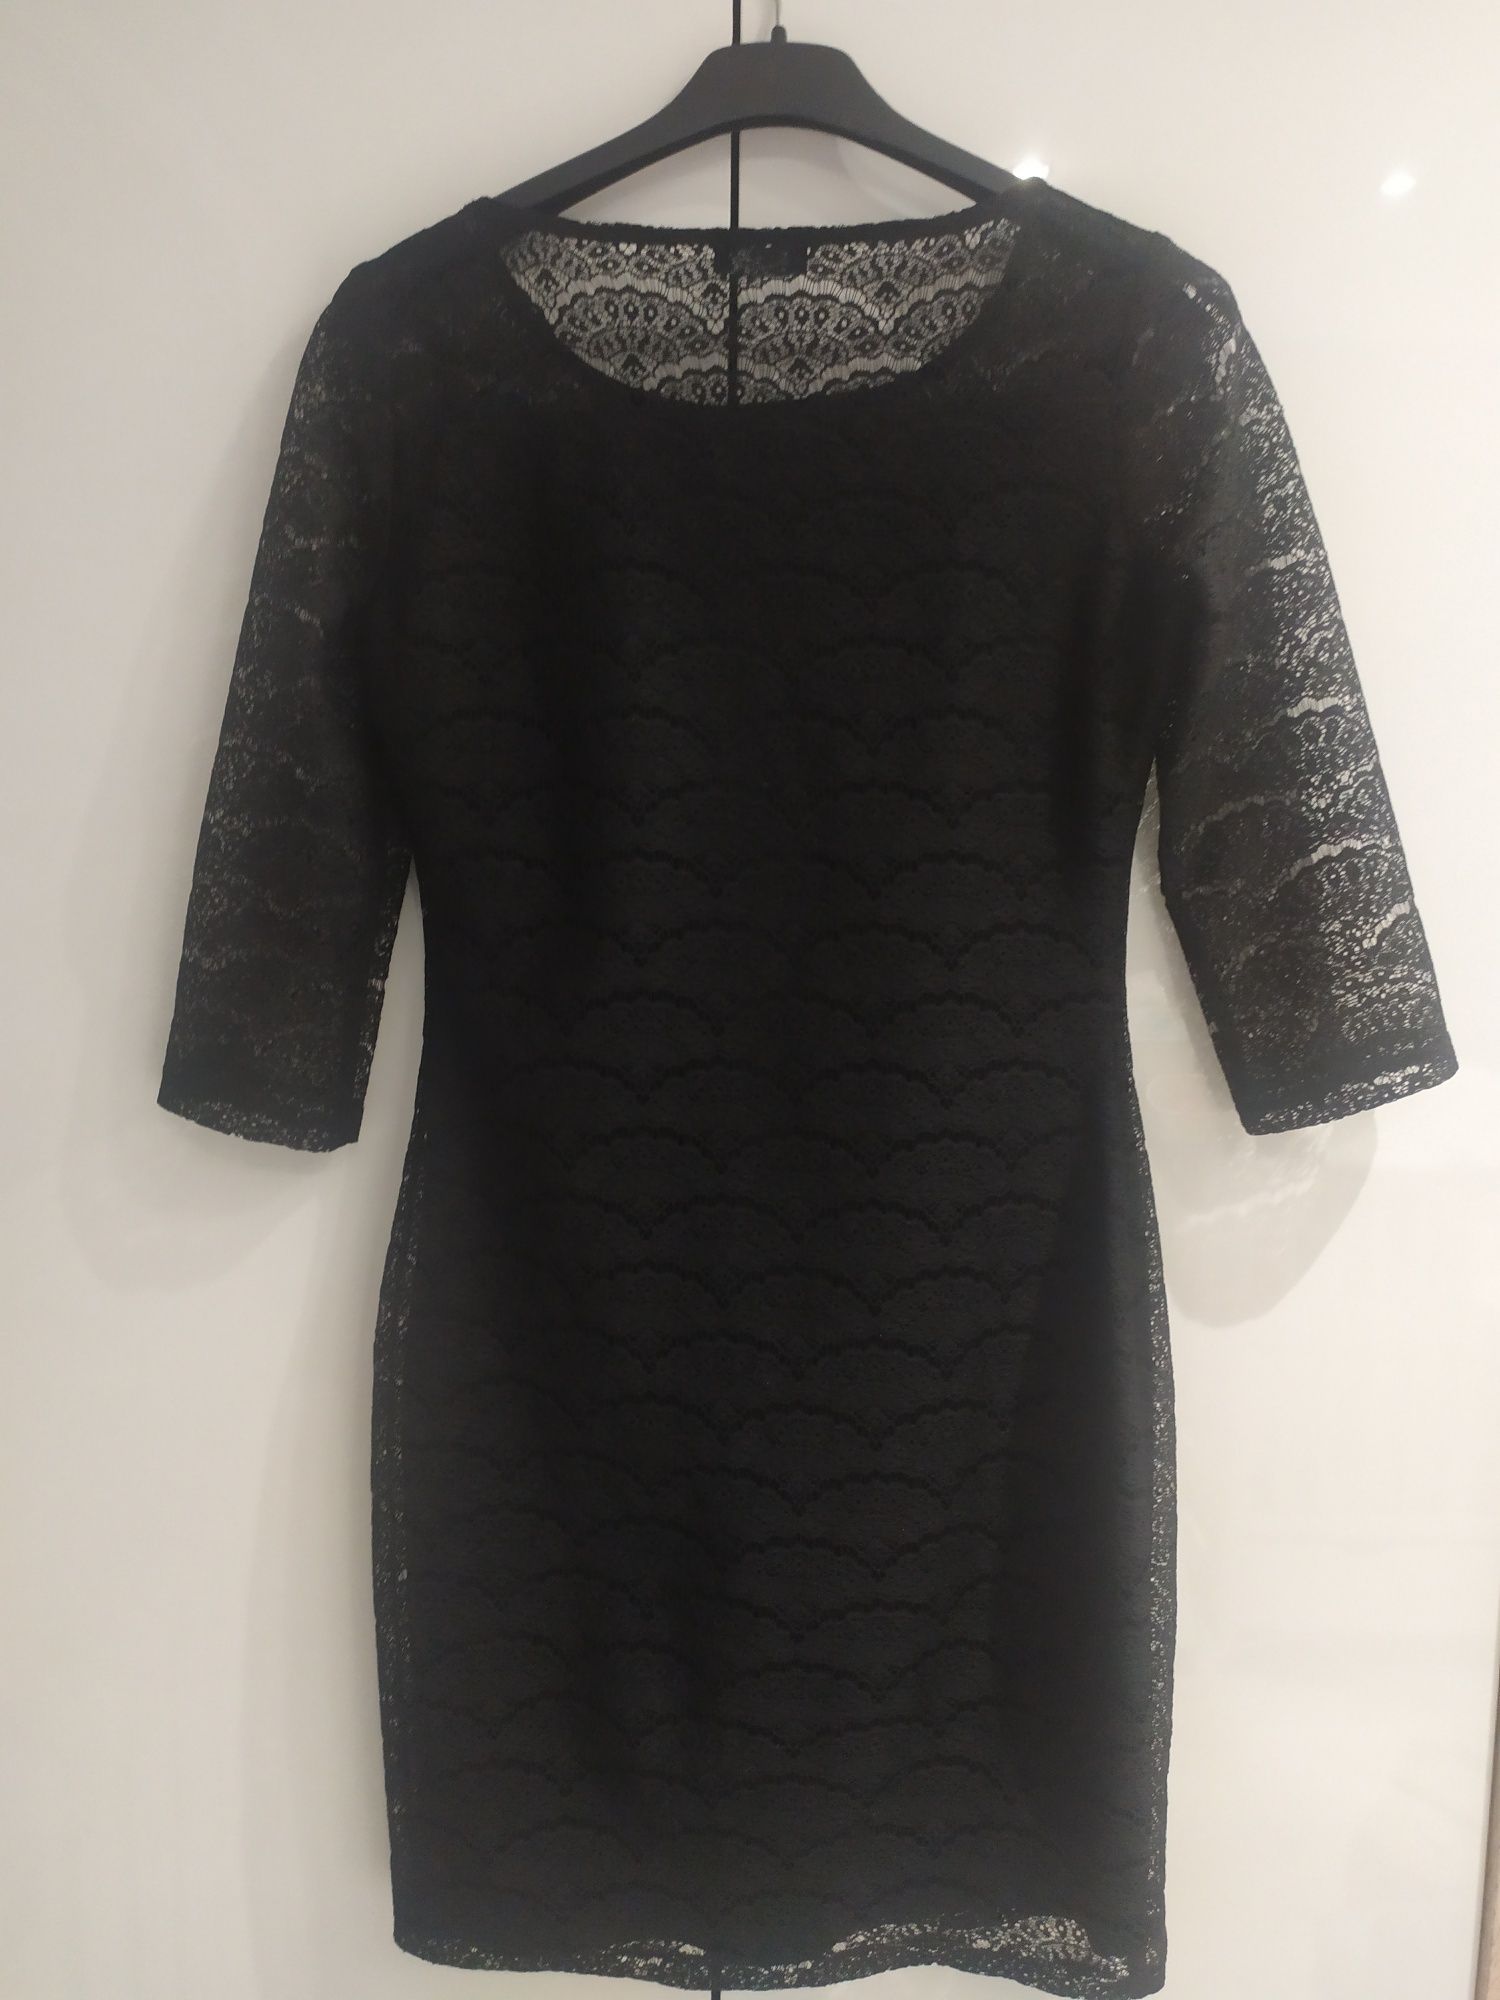 Mała czarna koronkowa sukienka F&F rozmiar 36